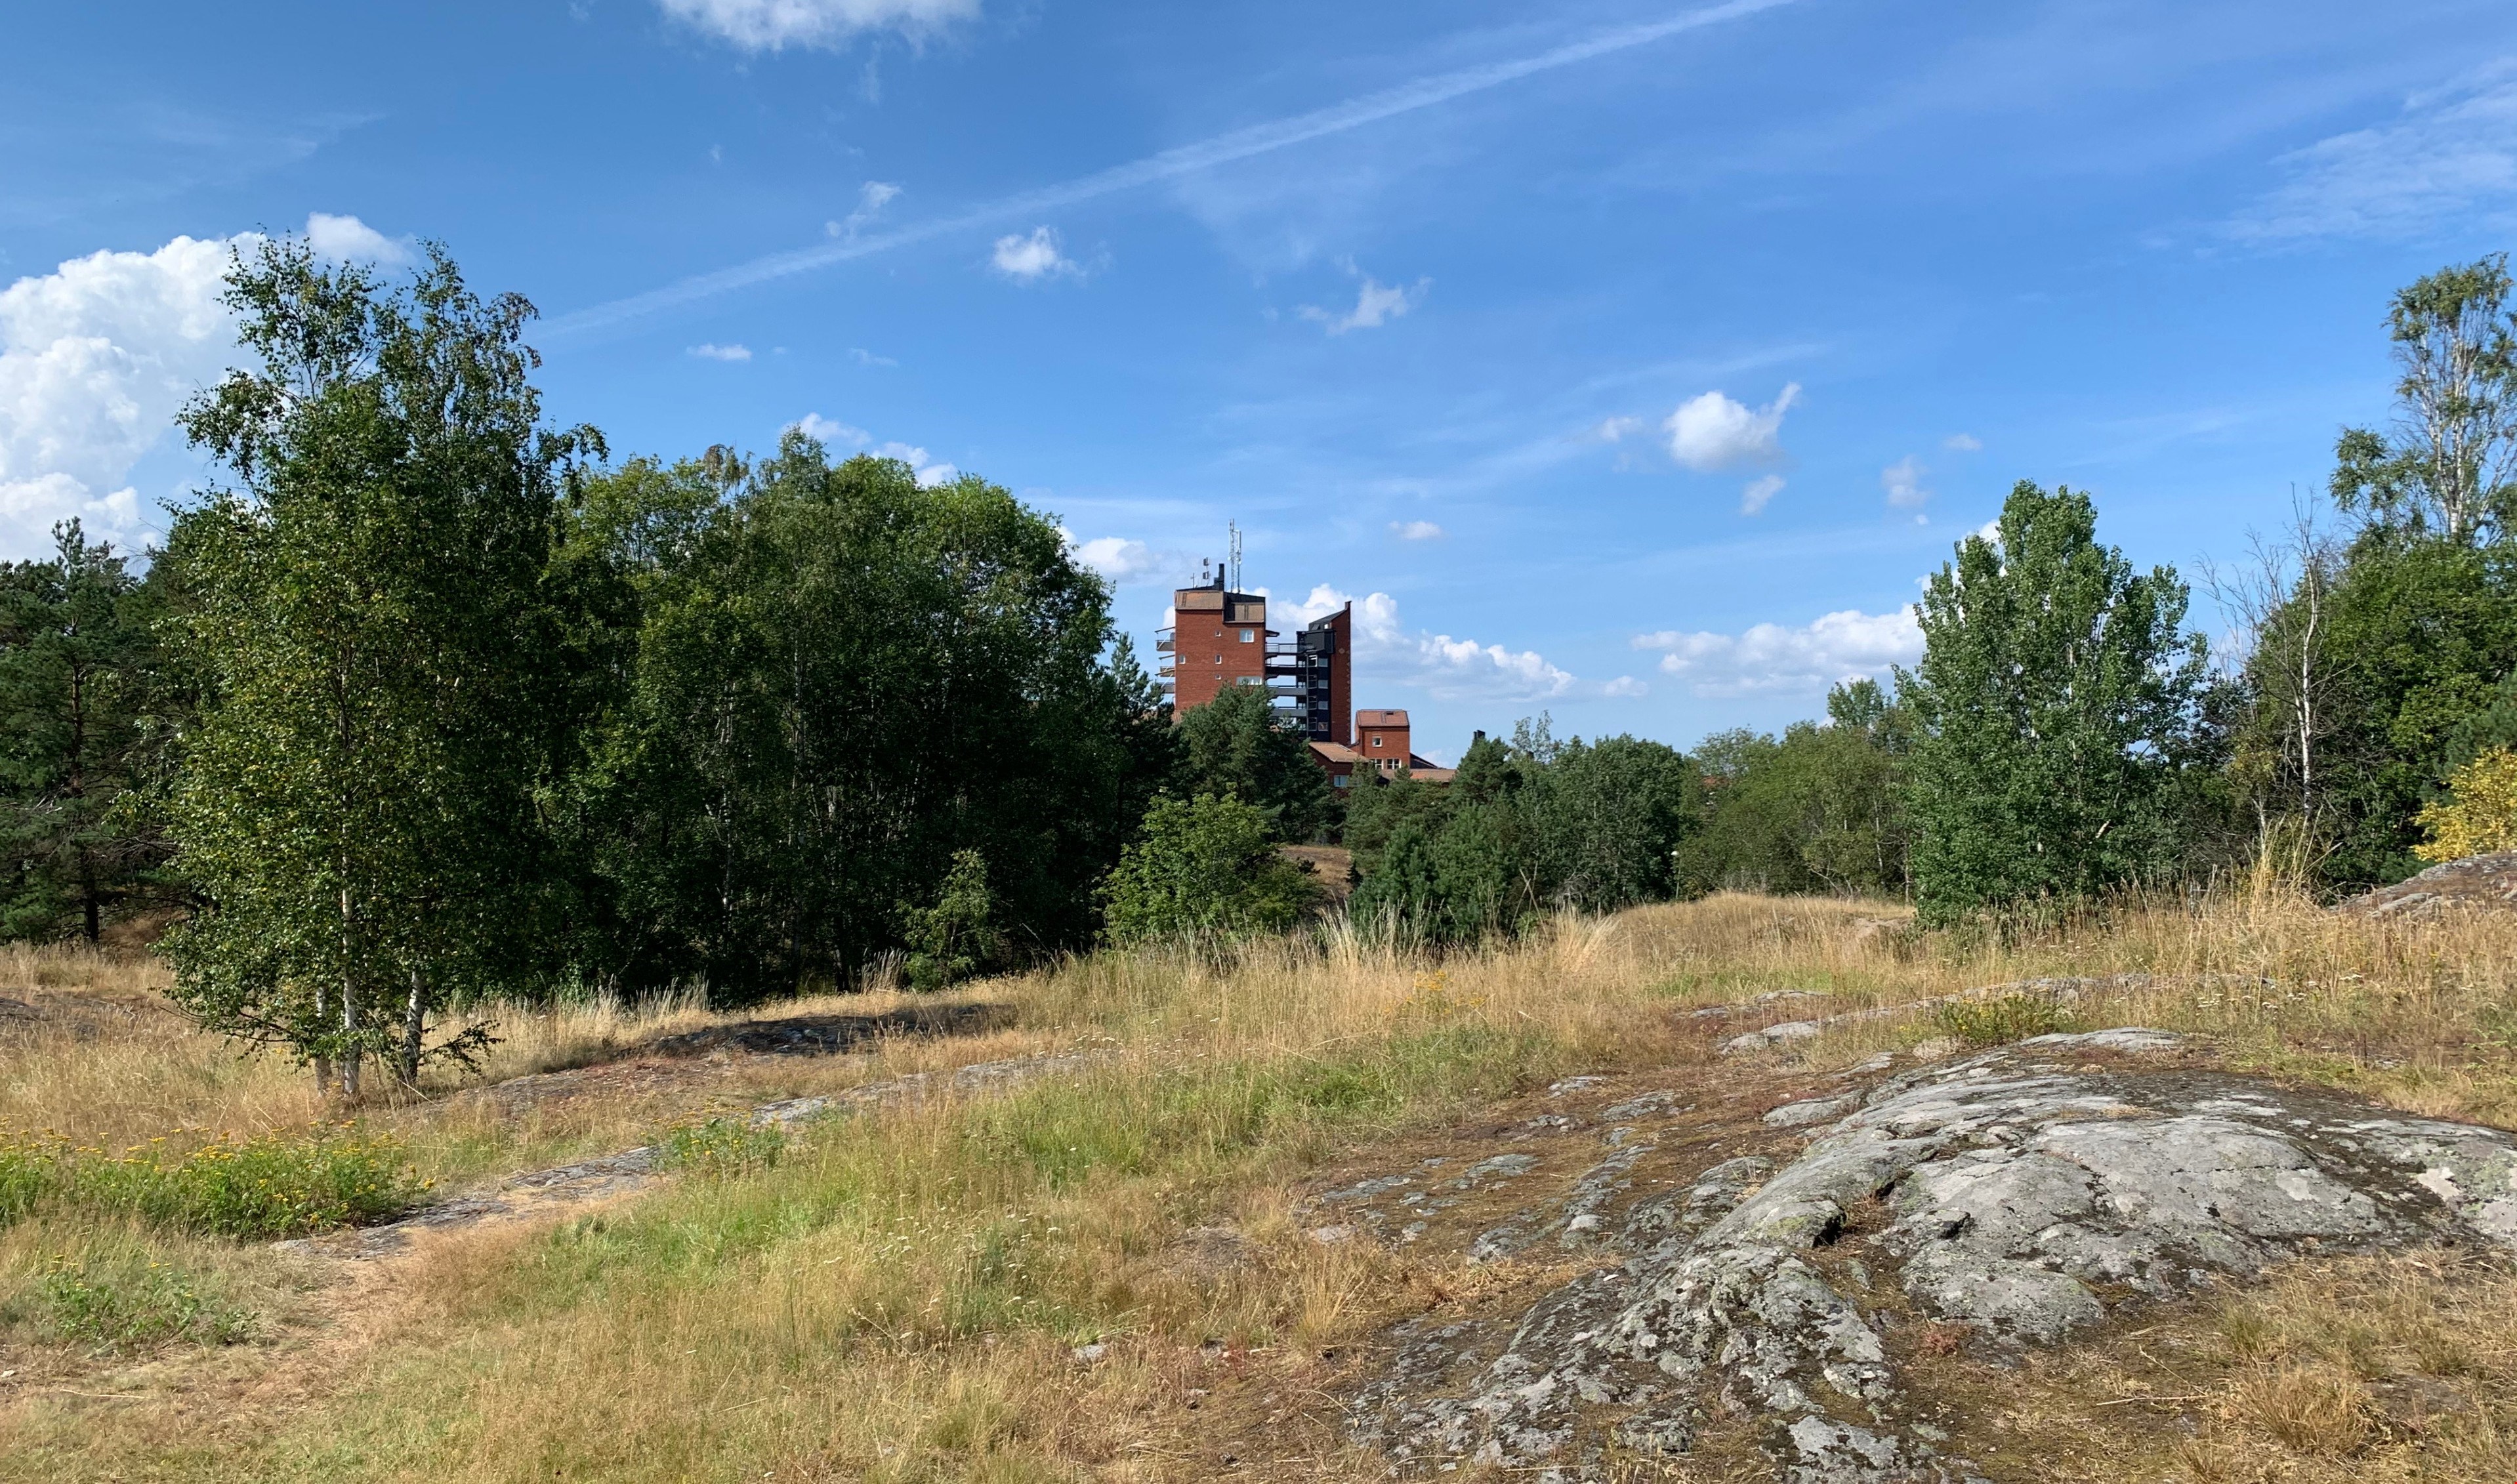 Markanvisning till Riksbyggen för 100 lägenheter i Skarpnäck